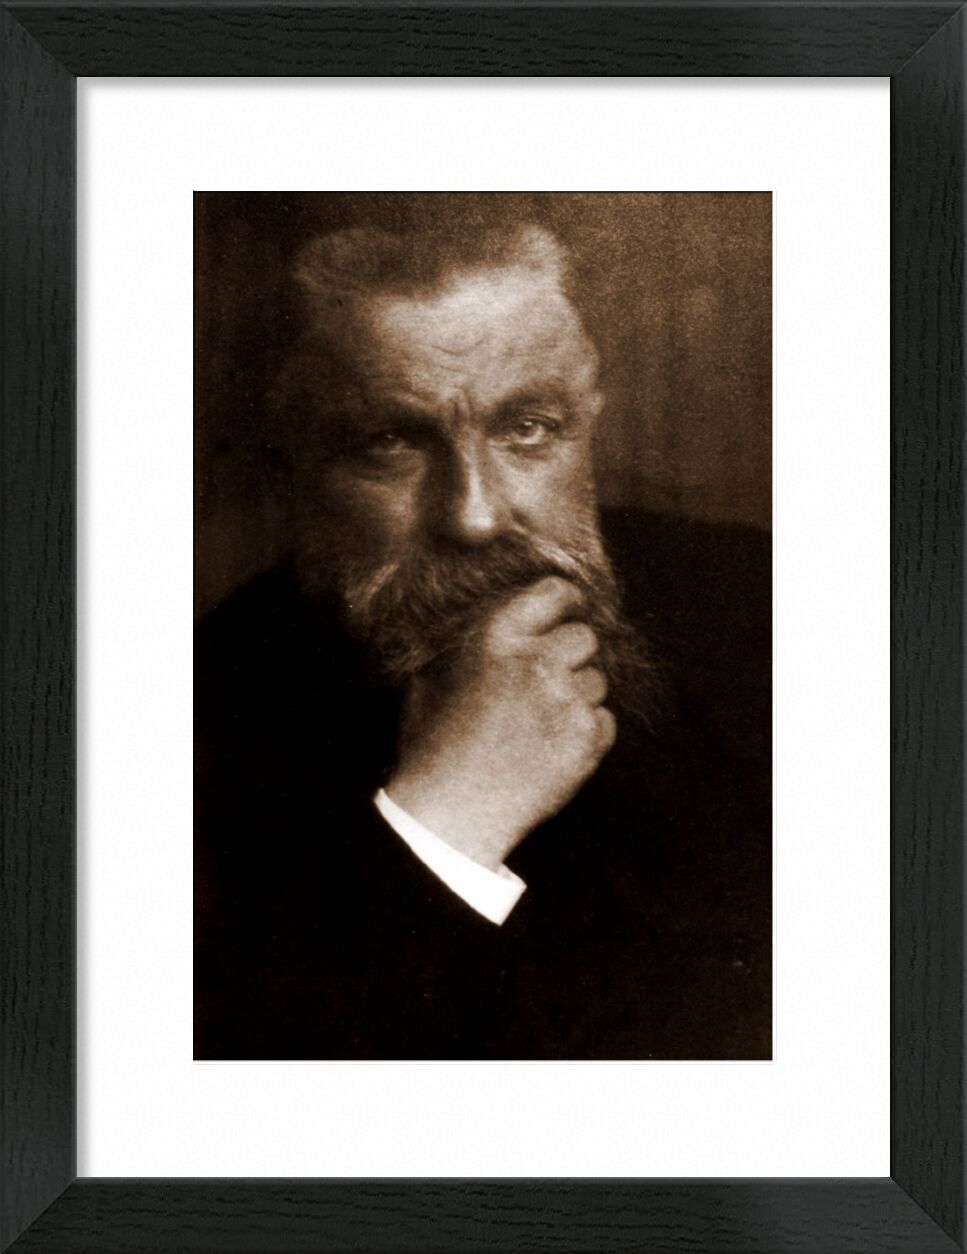 Auguste Rodin - Edward Steichen 1902 desde Bellas artes, Prodi Art, foto, foto antigua, Edward Steichen, Rodin, Auguste Rodin, barba, foto de arte